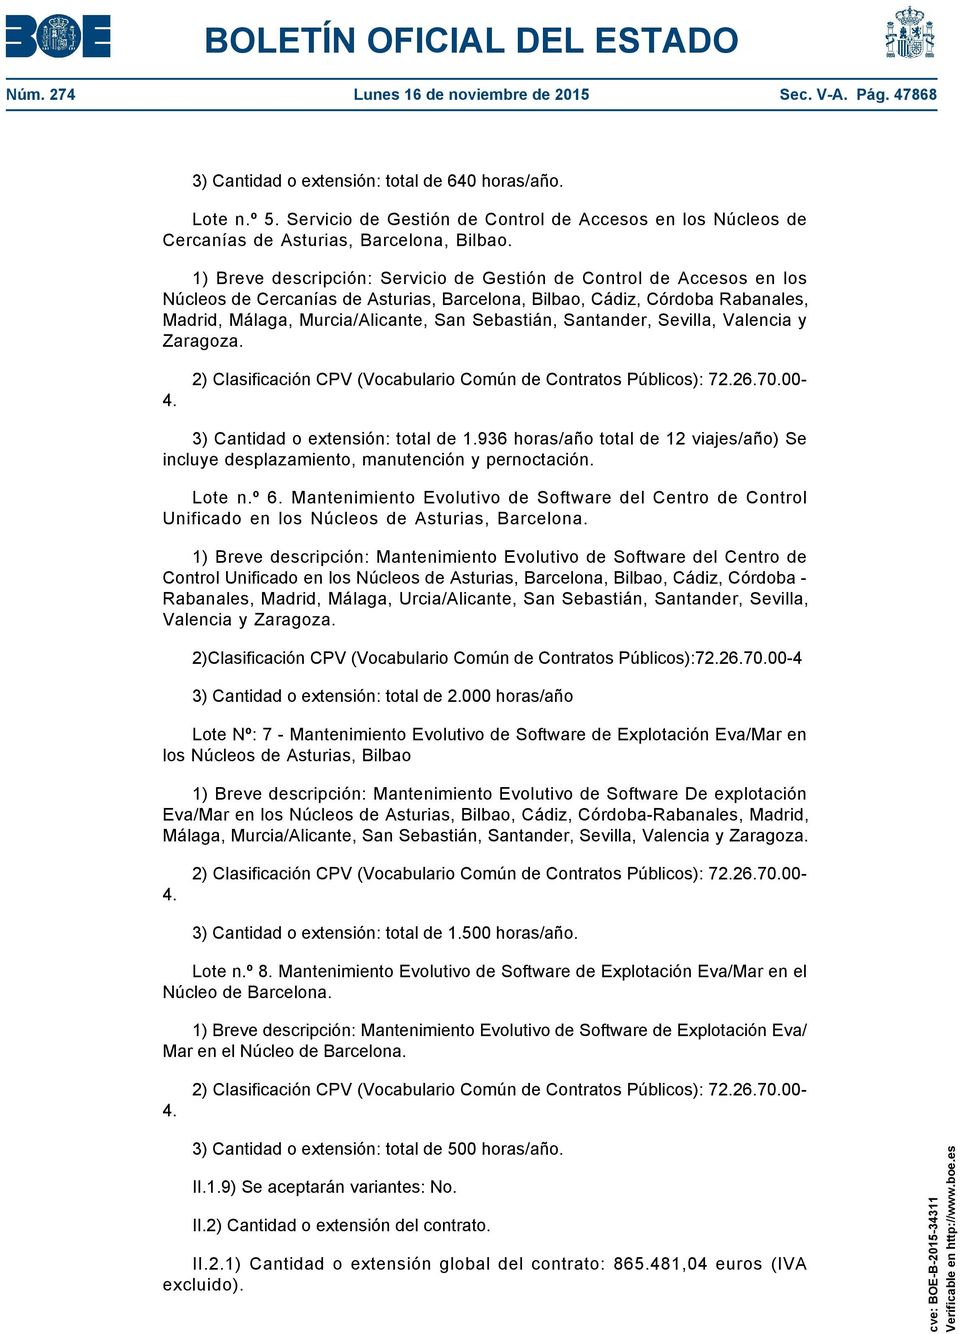 1) Breve descripción: Servicio de Gestión de Control de Accesos en los Núcleos de Cercanías de Asturias, Barcelona, Bilbao, Cádiz, Córdoba Rabanales, Madrid, Málaga, Murcia/Alicante, San Sebastián,